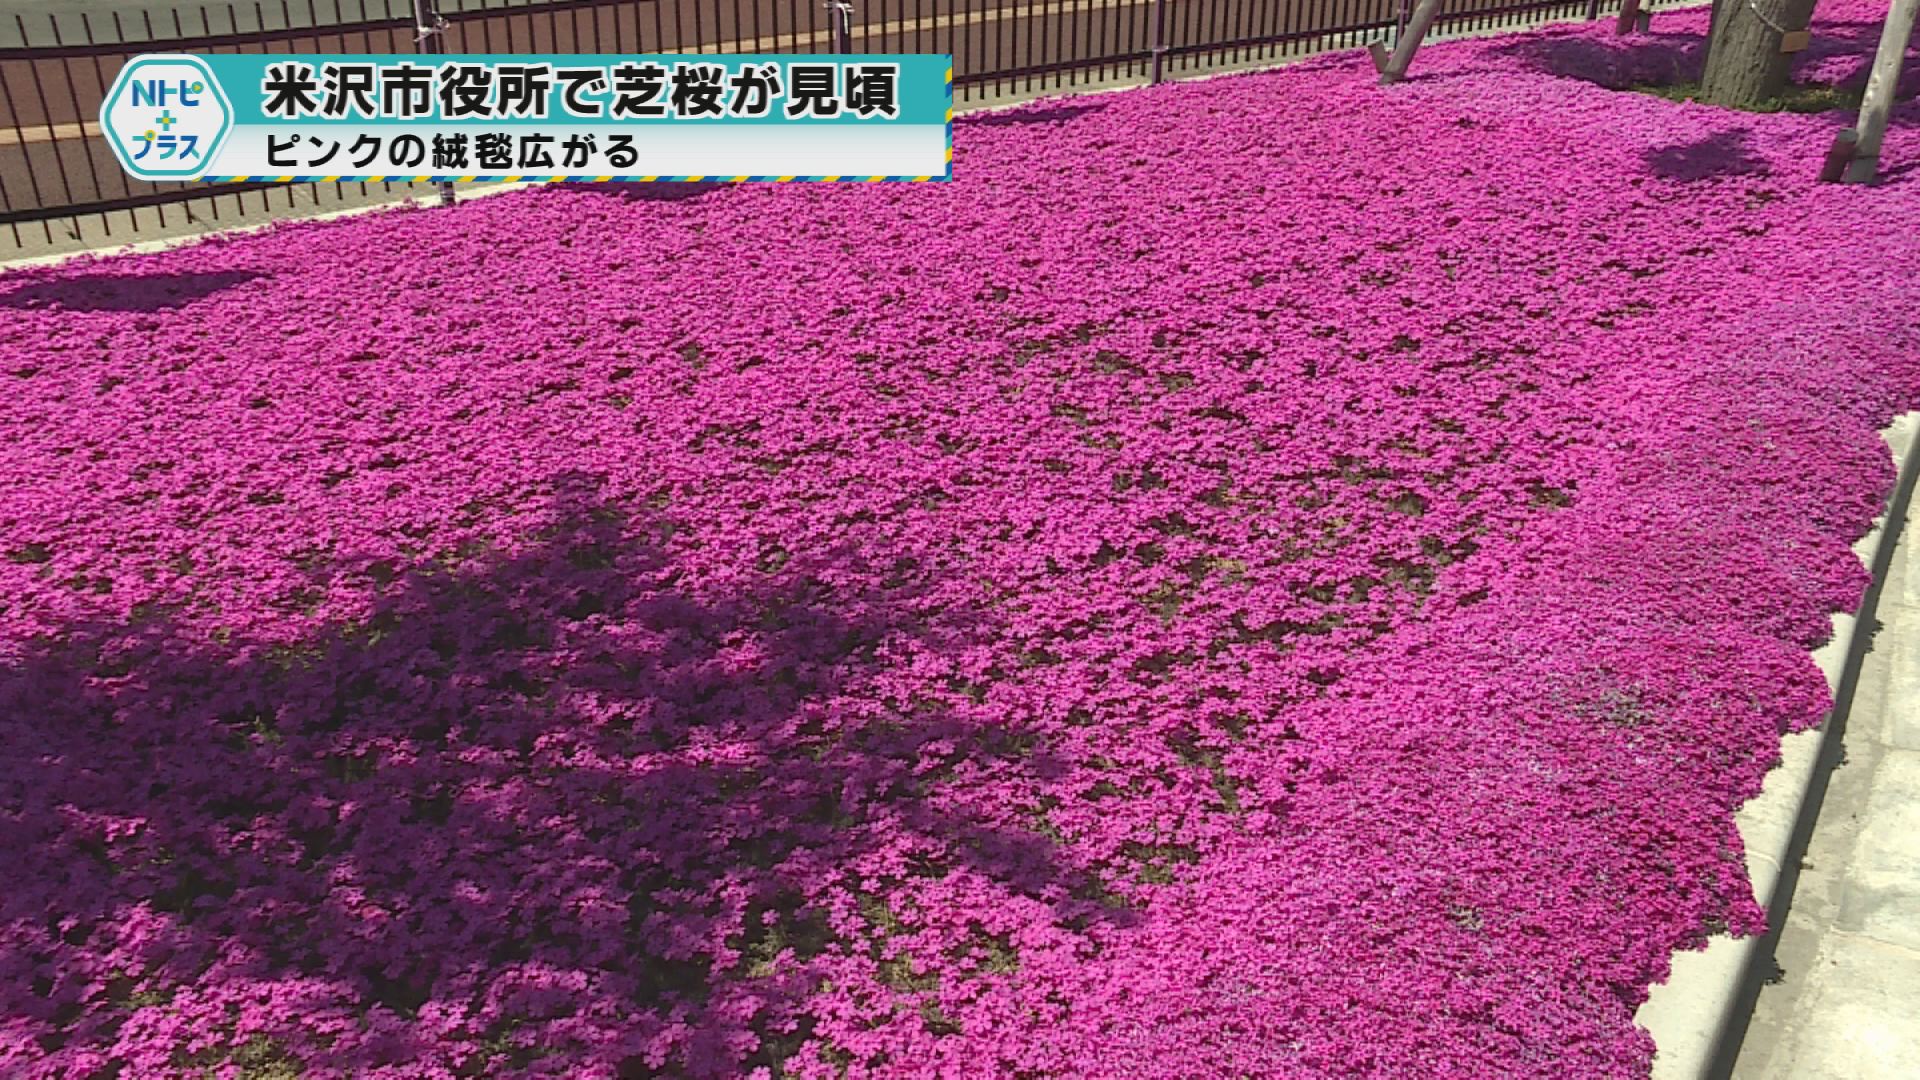 「米沢市役所で芝桜が見頃」ピンクの絨毯広がる